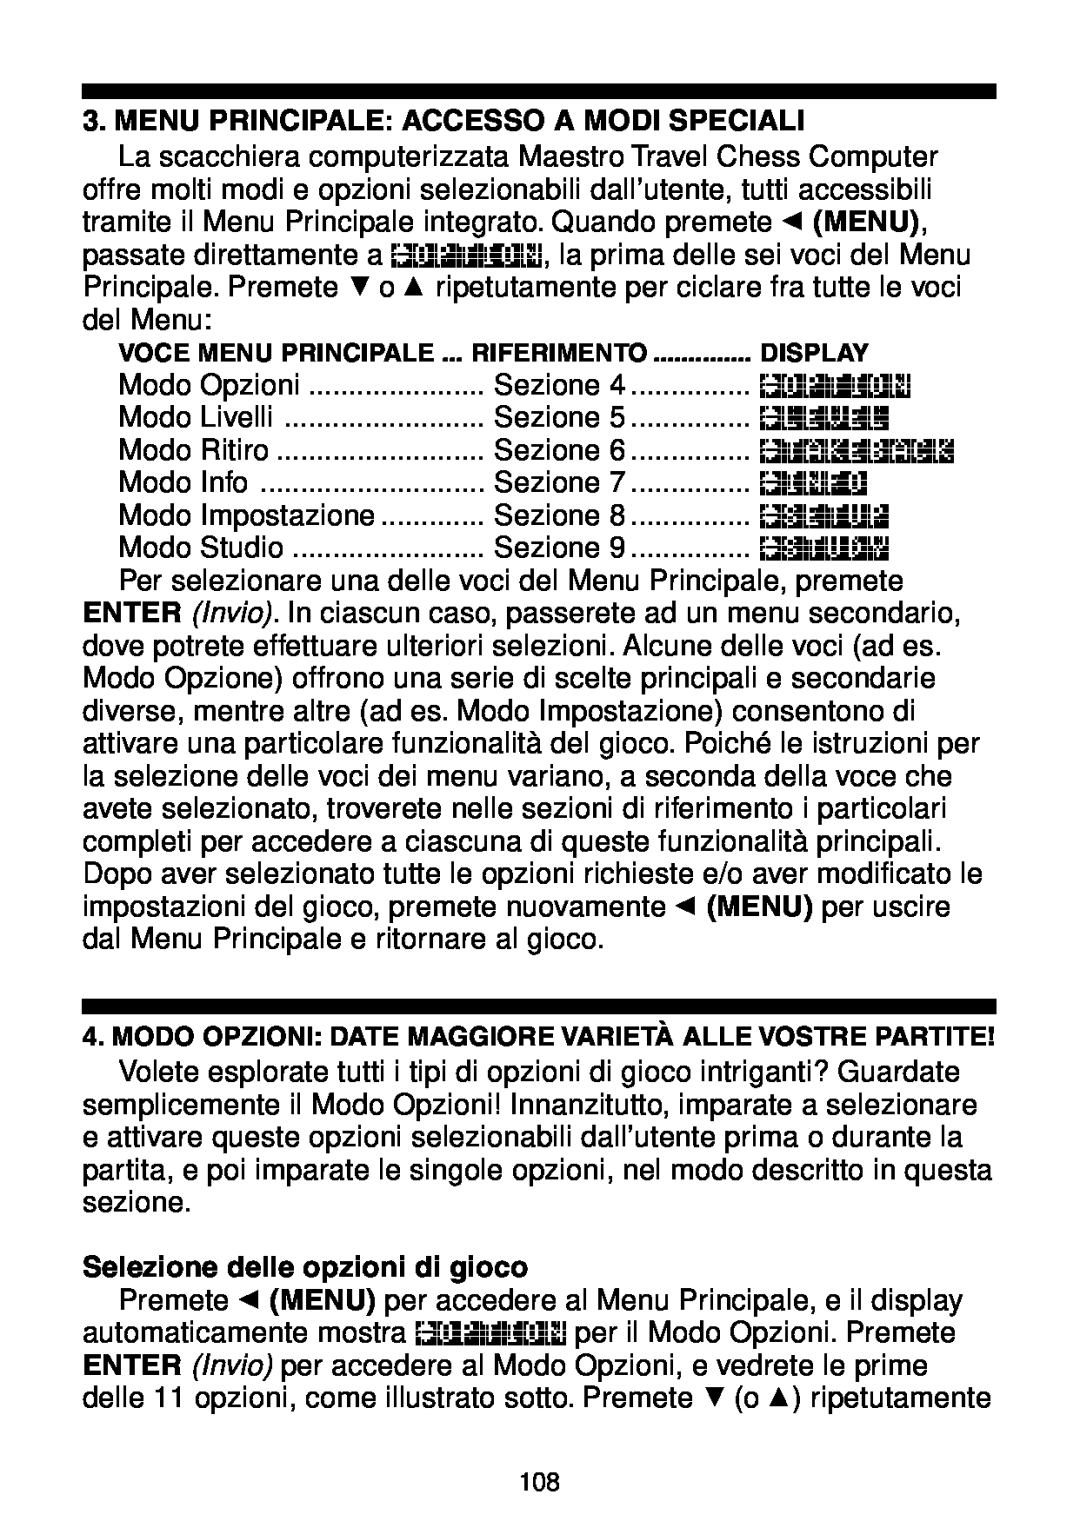 Saitek Maestro Travel Chess Computer manual Menu Principale Accesso A Modi Speciali, Selezione delle opzioni di gioco 